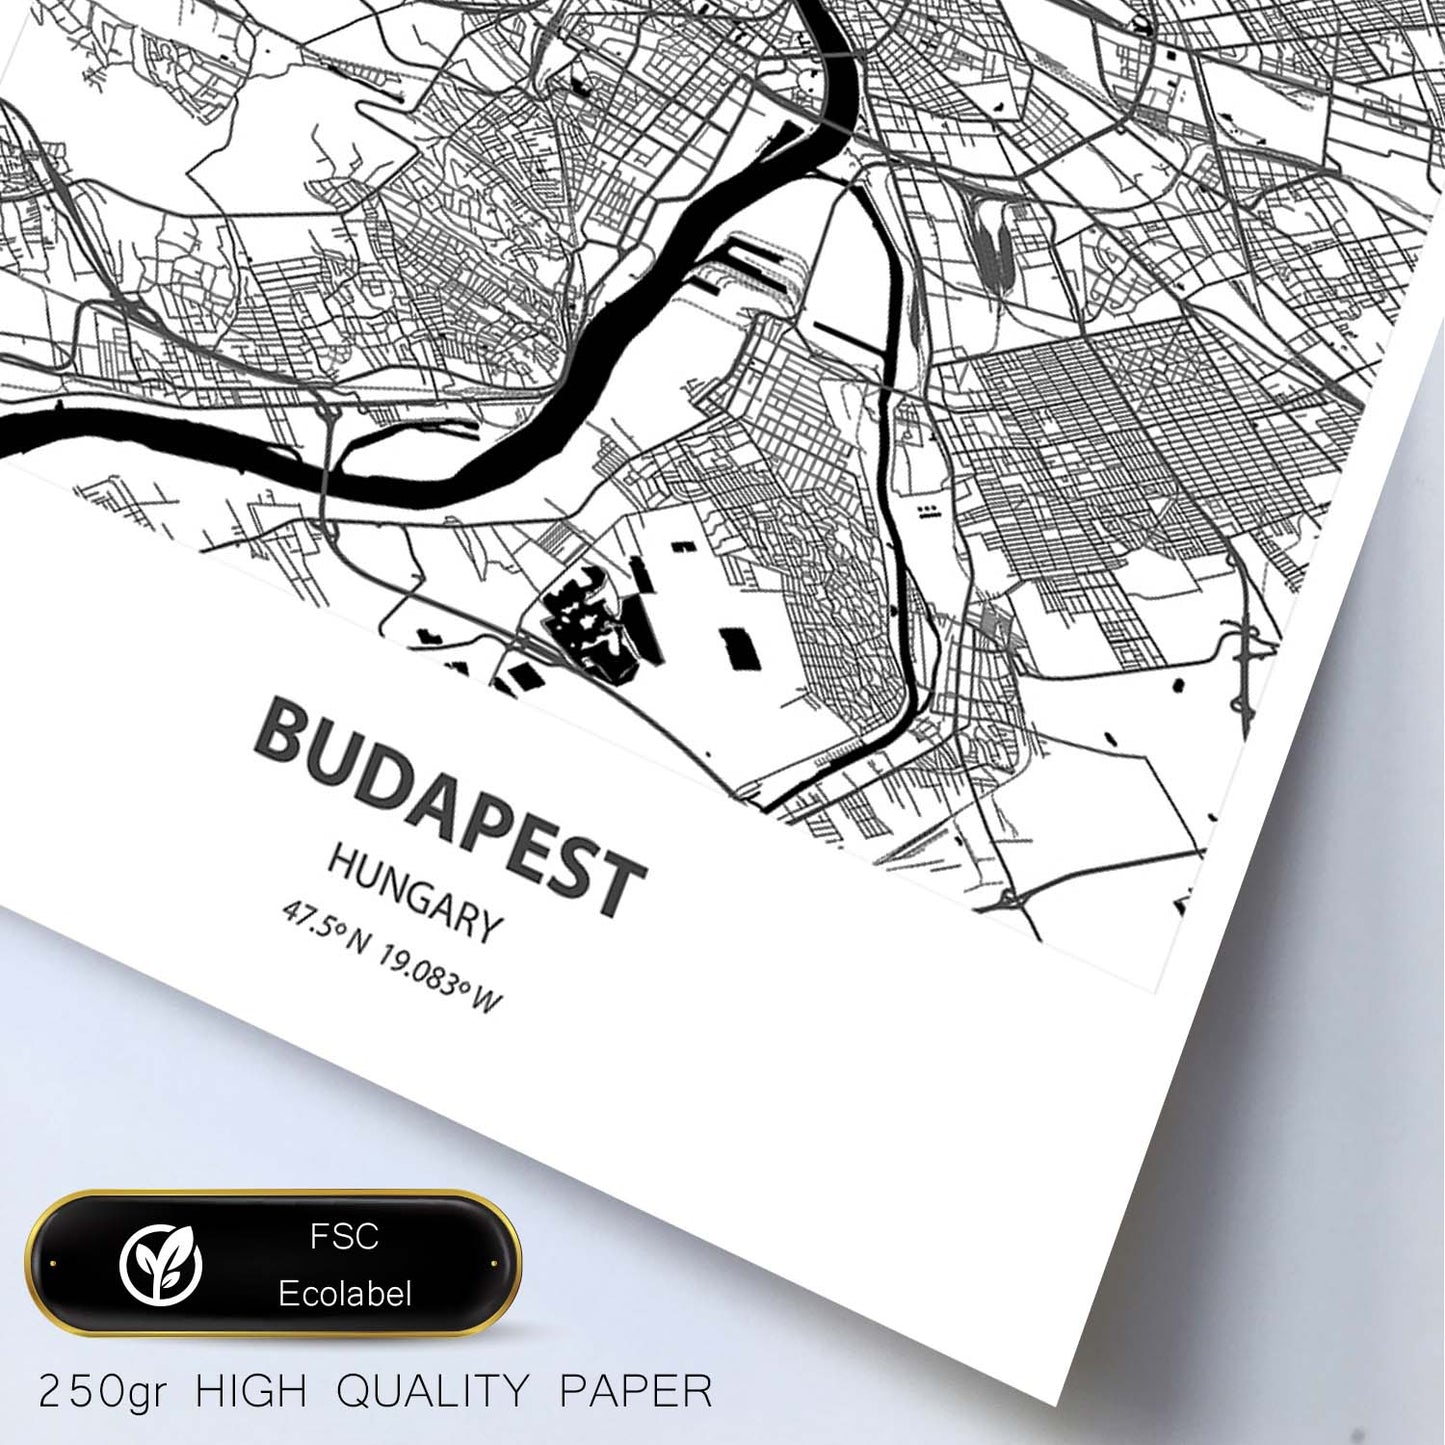 Poster con mapa de Budapest - Hungria. Láminas de ciudades de Europa con mares y ríos en color negro.-Artwork-Nacnic-Nacnic Estudio SL